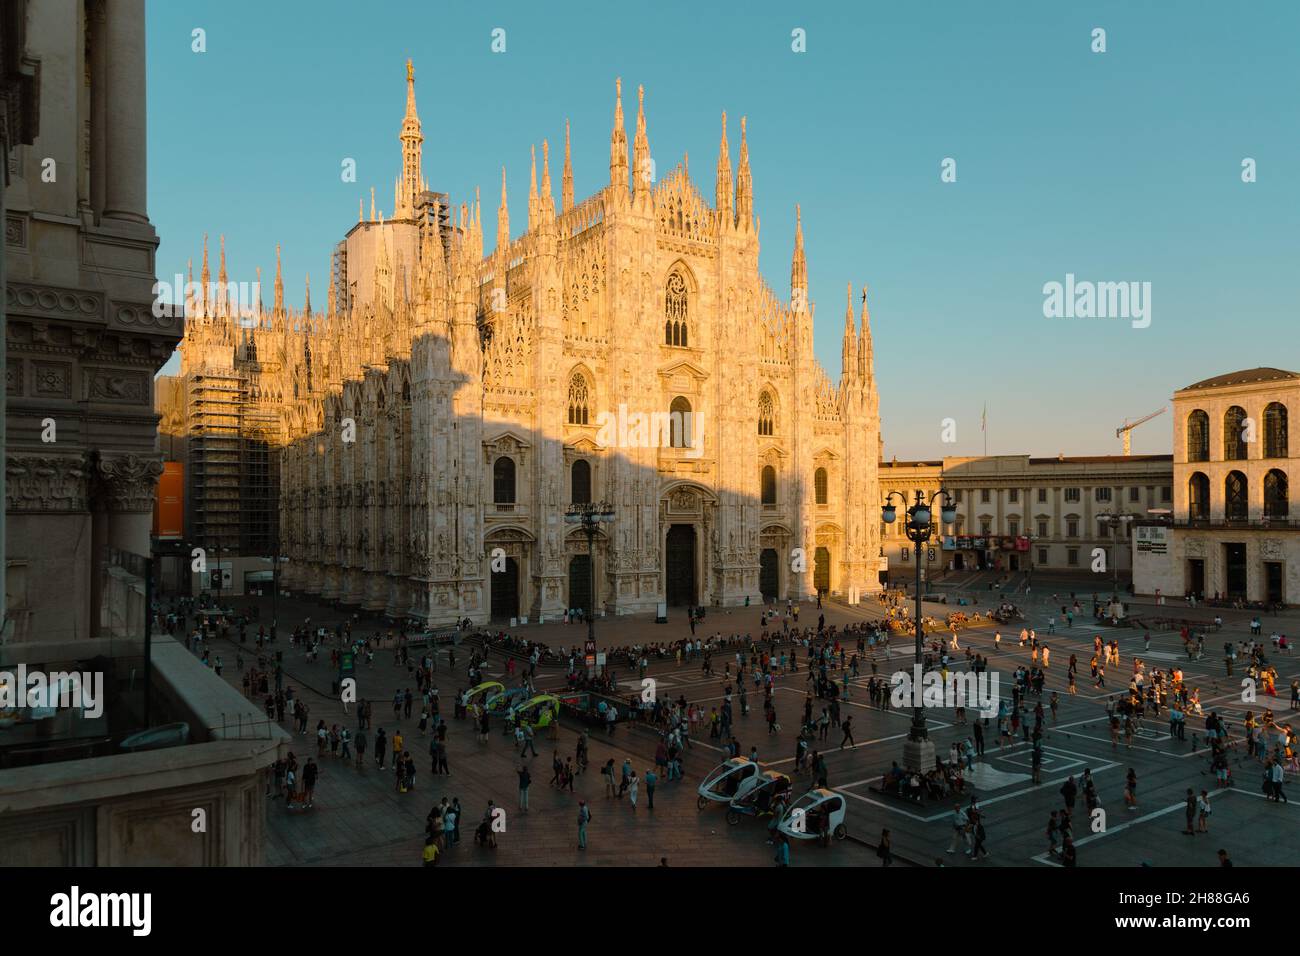 Piazza del Duomo or Duomo Square. Duomo di Milano Cathedral, Italy Stock Photo